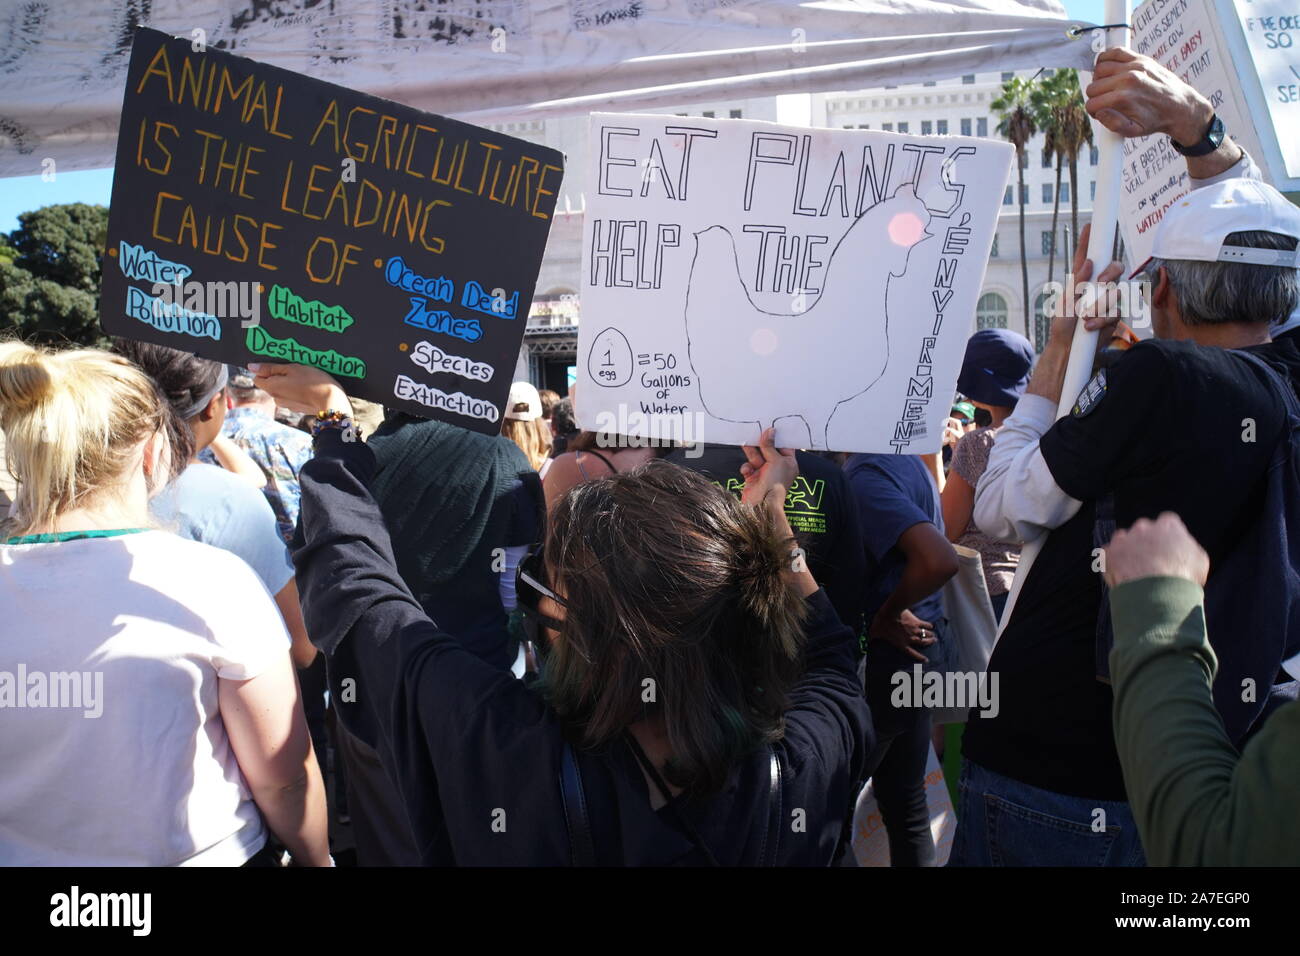 02 novembre 2019, à Los Angeles, en Californie, des centaines se rassembler à Los Angeles pour grève climatique Banque D'Images